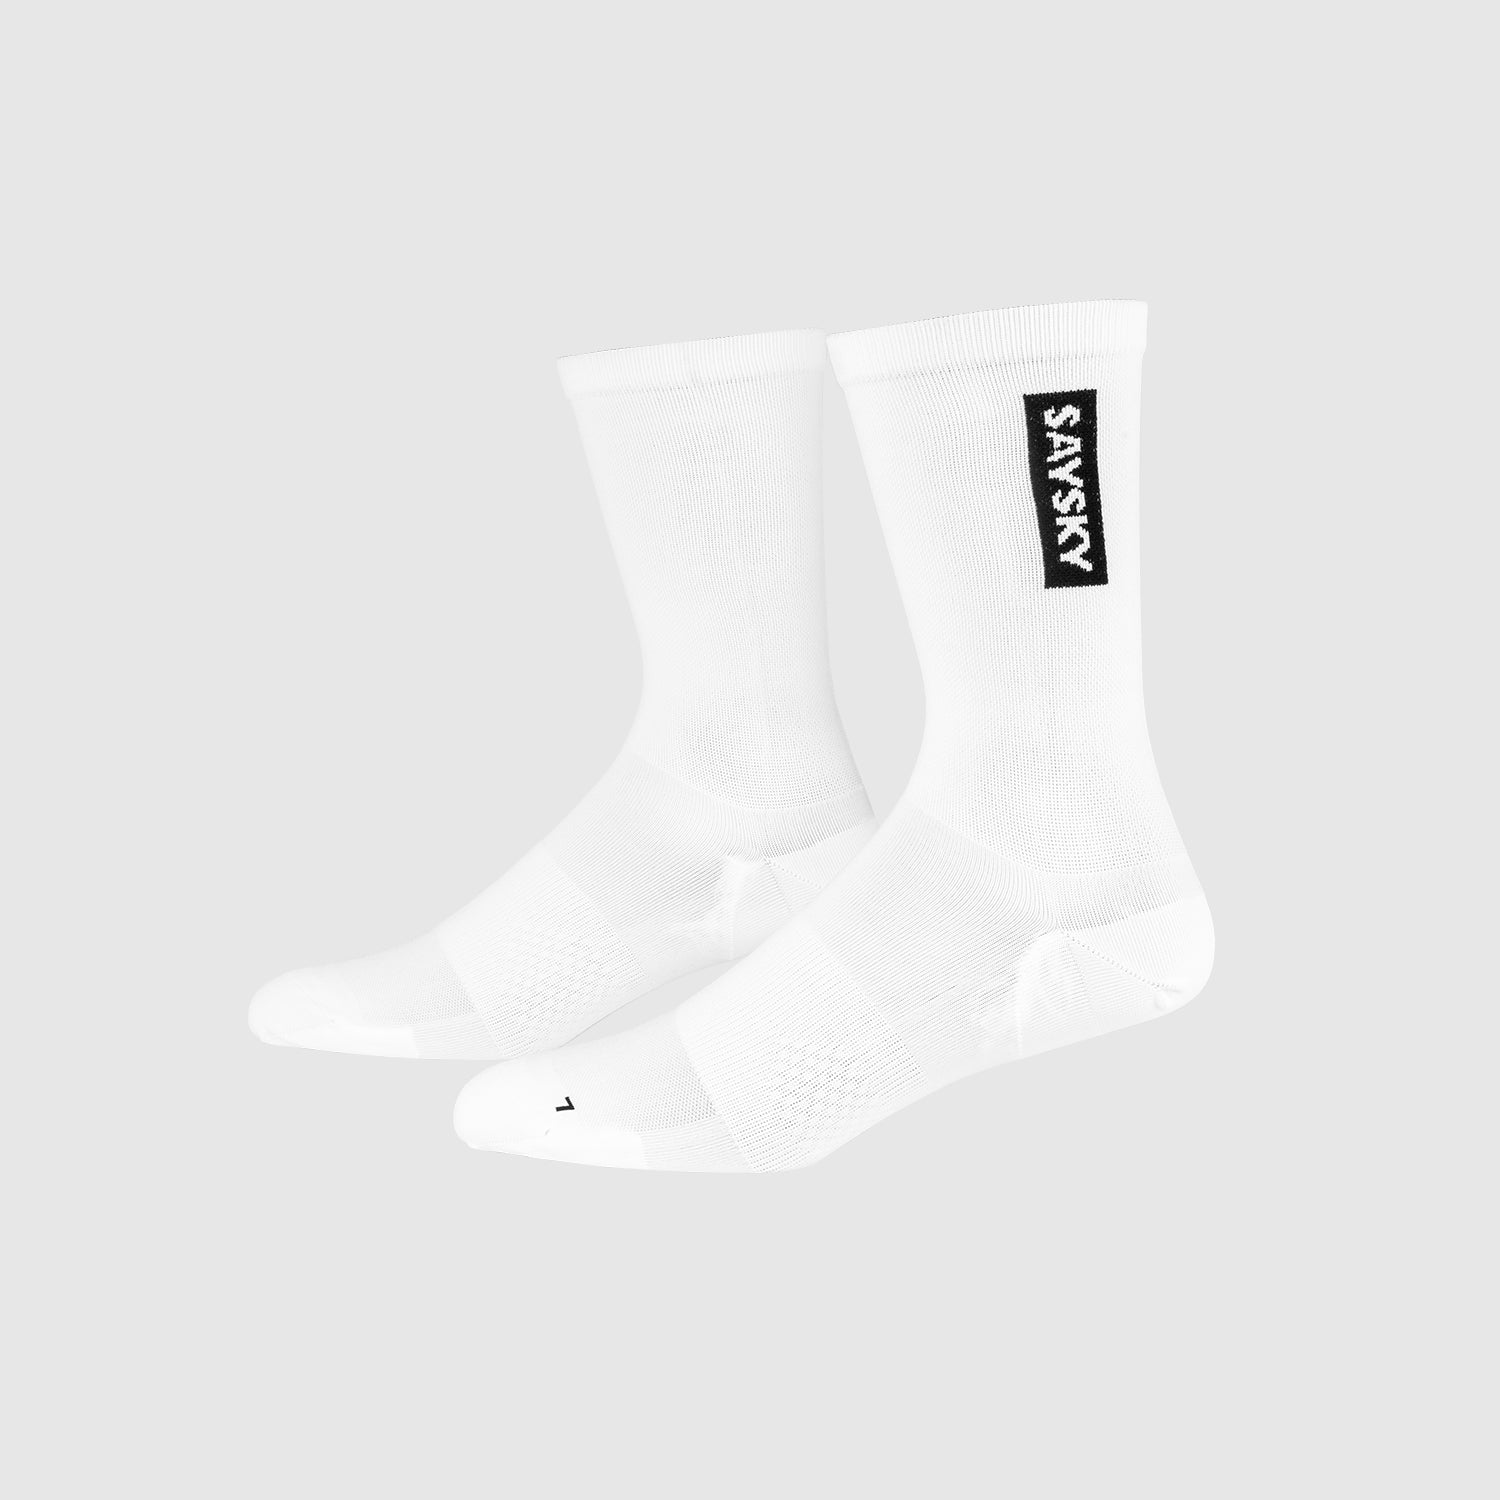 ランニングソックス GMASO05 High Combat Socks - White [ユニセックス]